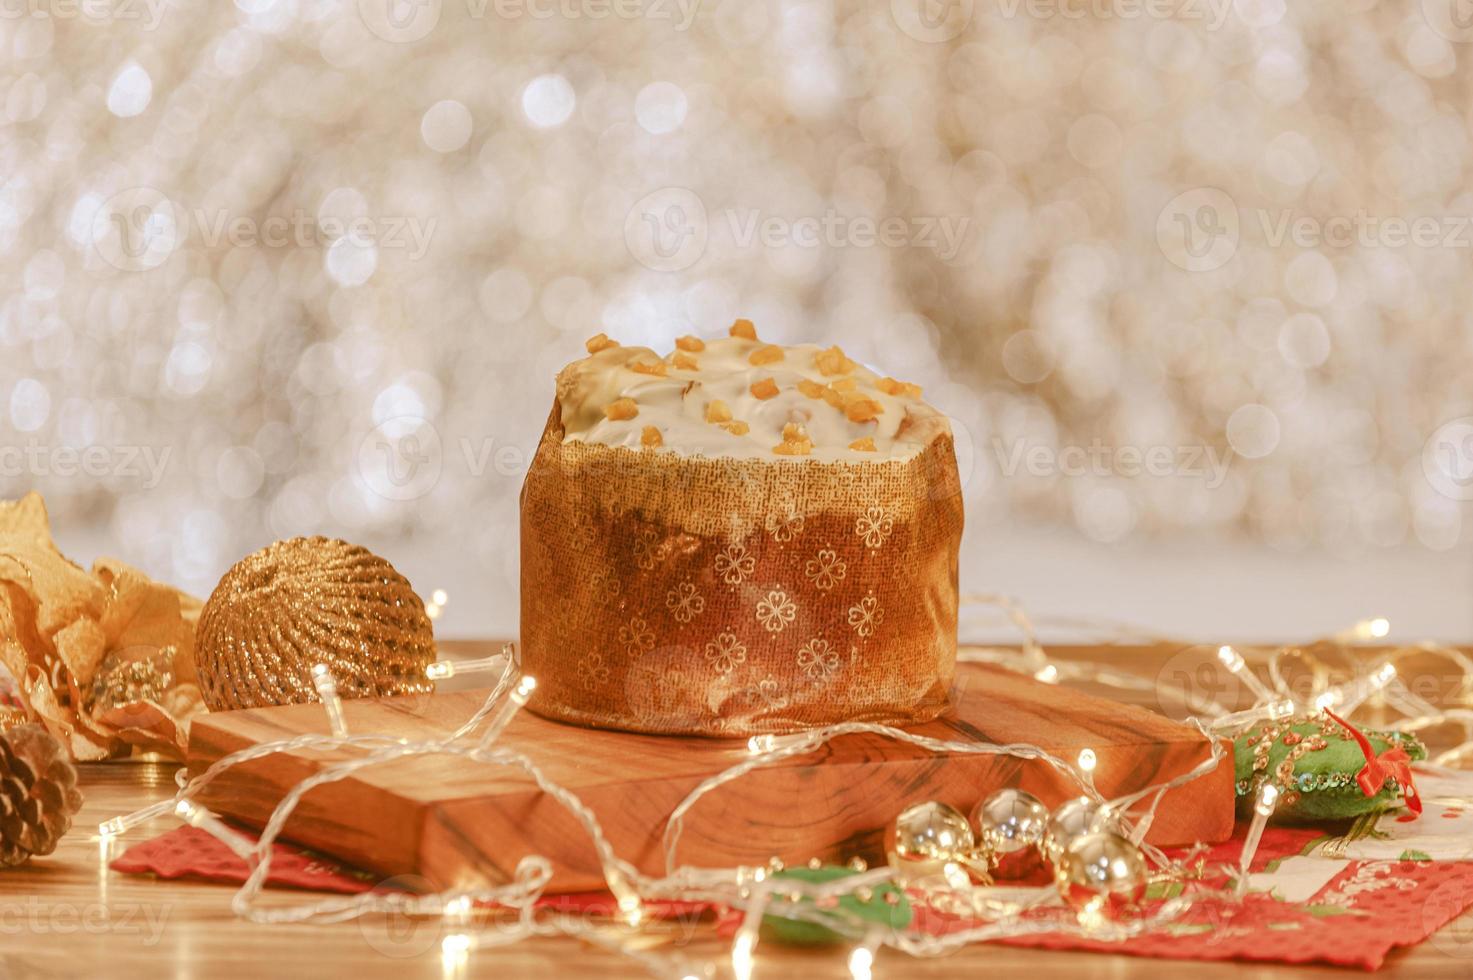 vit choklad panettone med torkad aprikos på träbord med juldekorationer foto